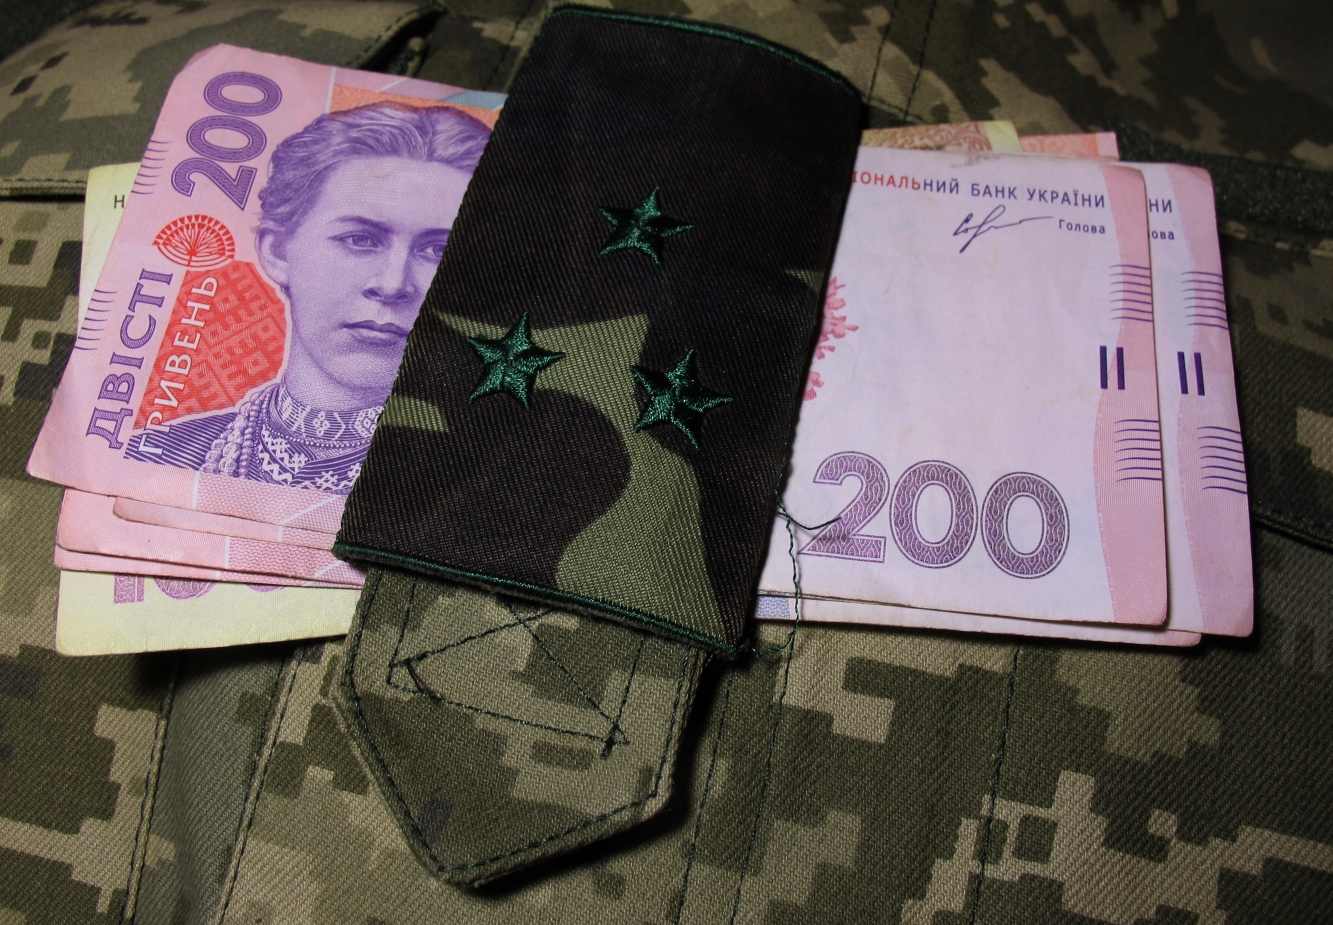 Пенсии военнослужащим: названы суммы, на которые могут рассчитывать защитники Украины